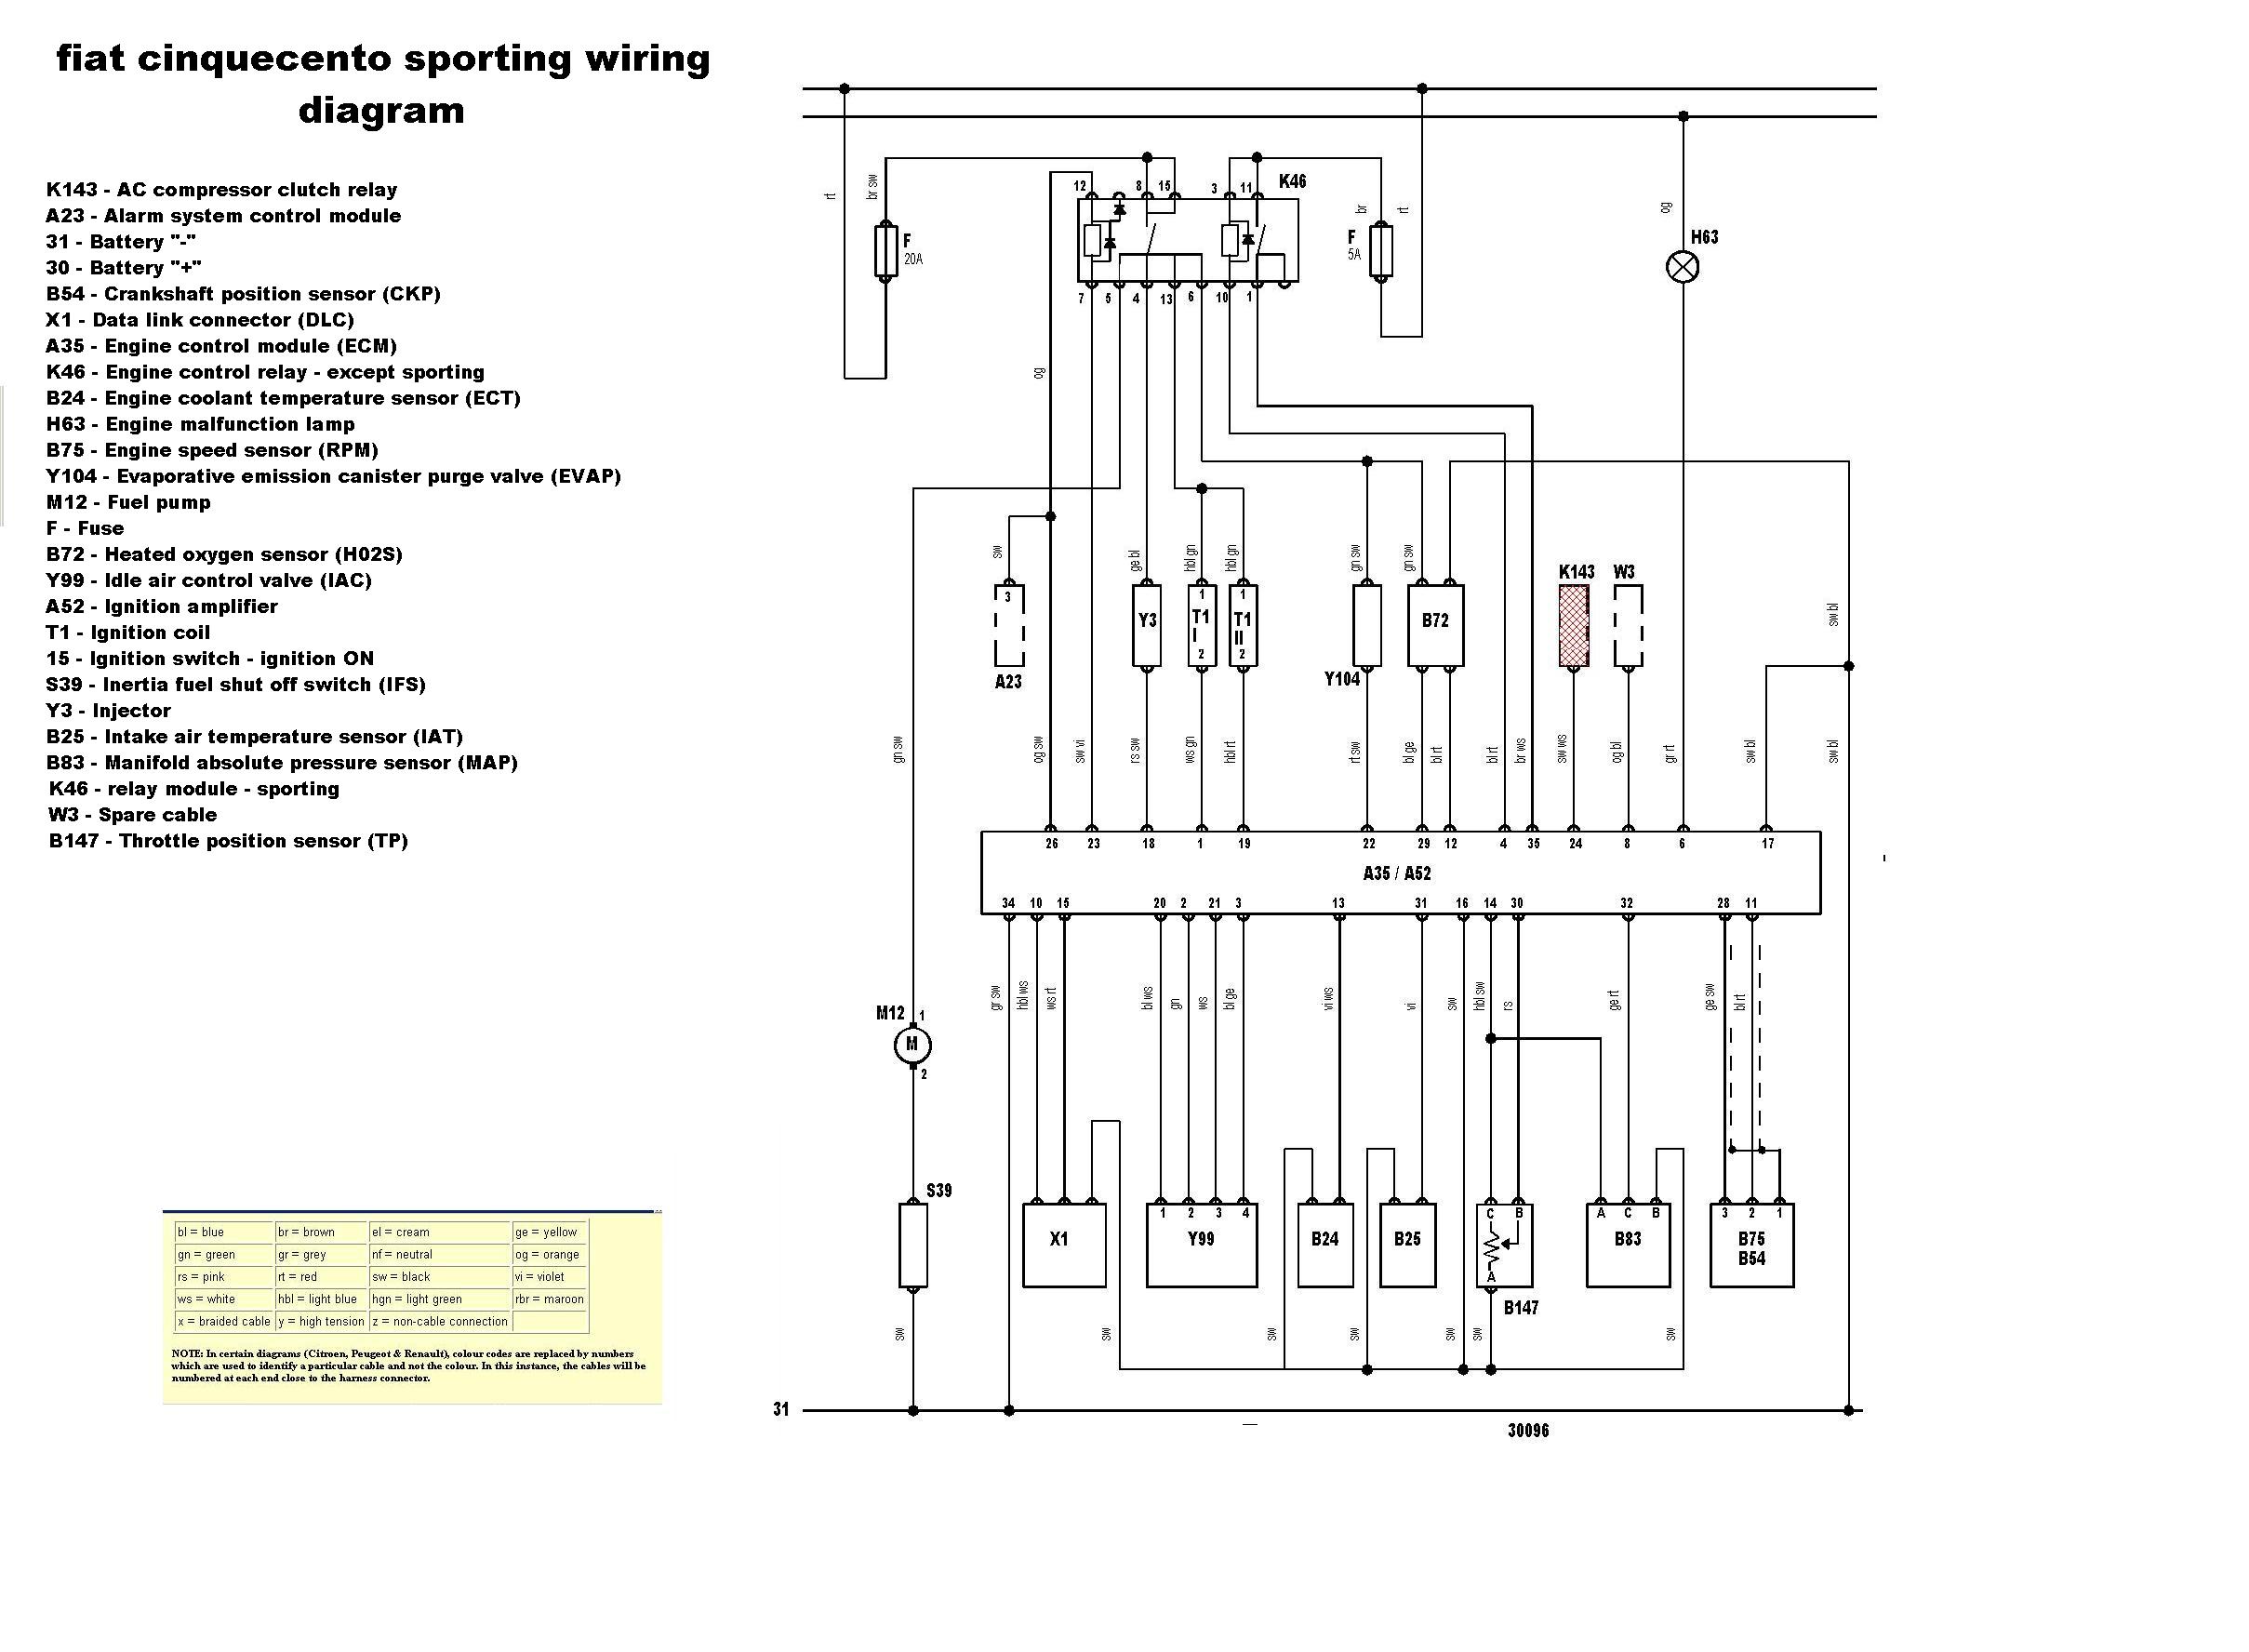 2012 Kia Sorento Evap System Wiring Diagram from www.fiatforum.com